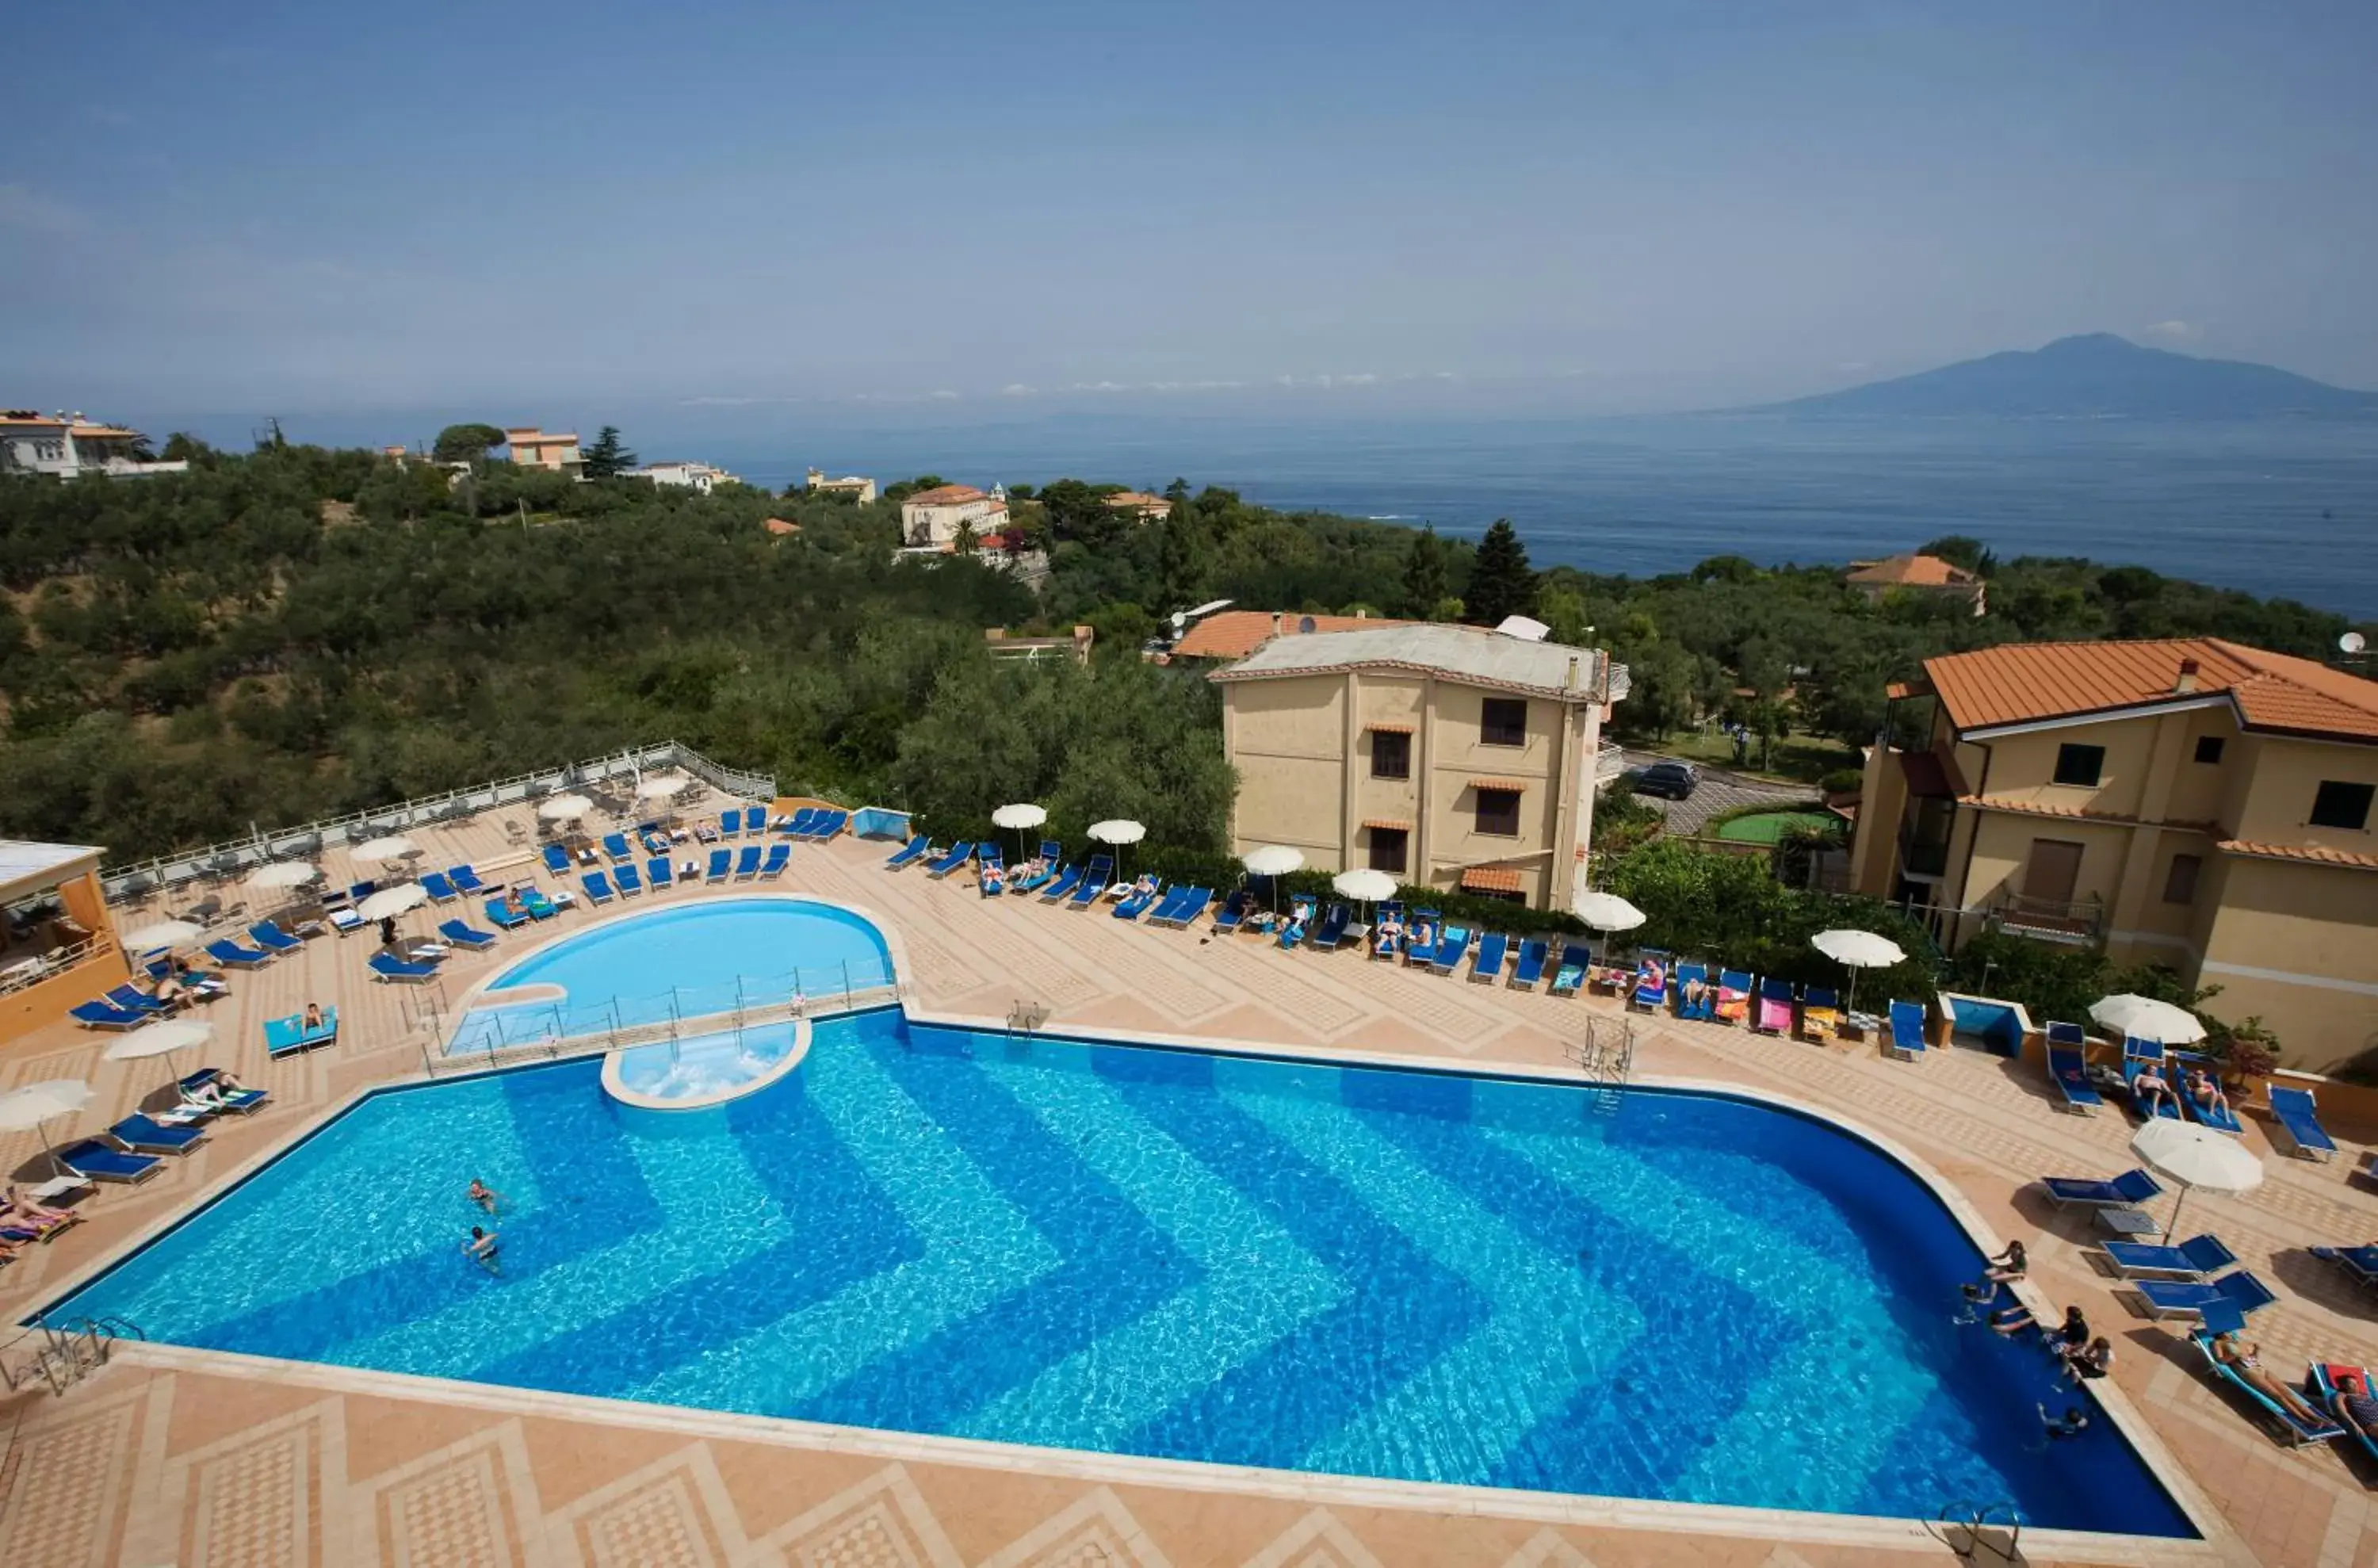 Swimming pool in Hotel Grand Vesuvio